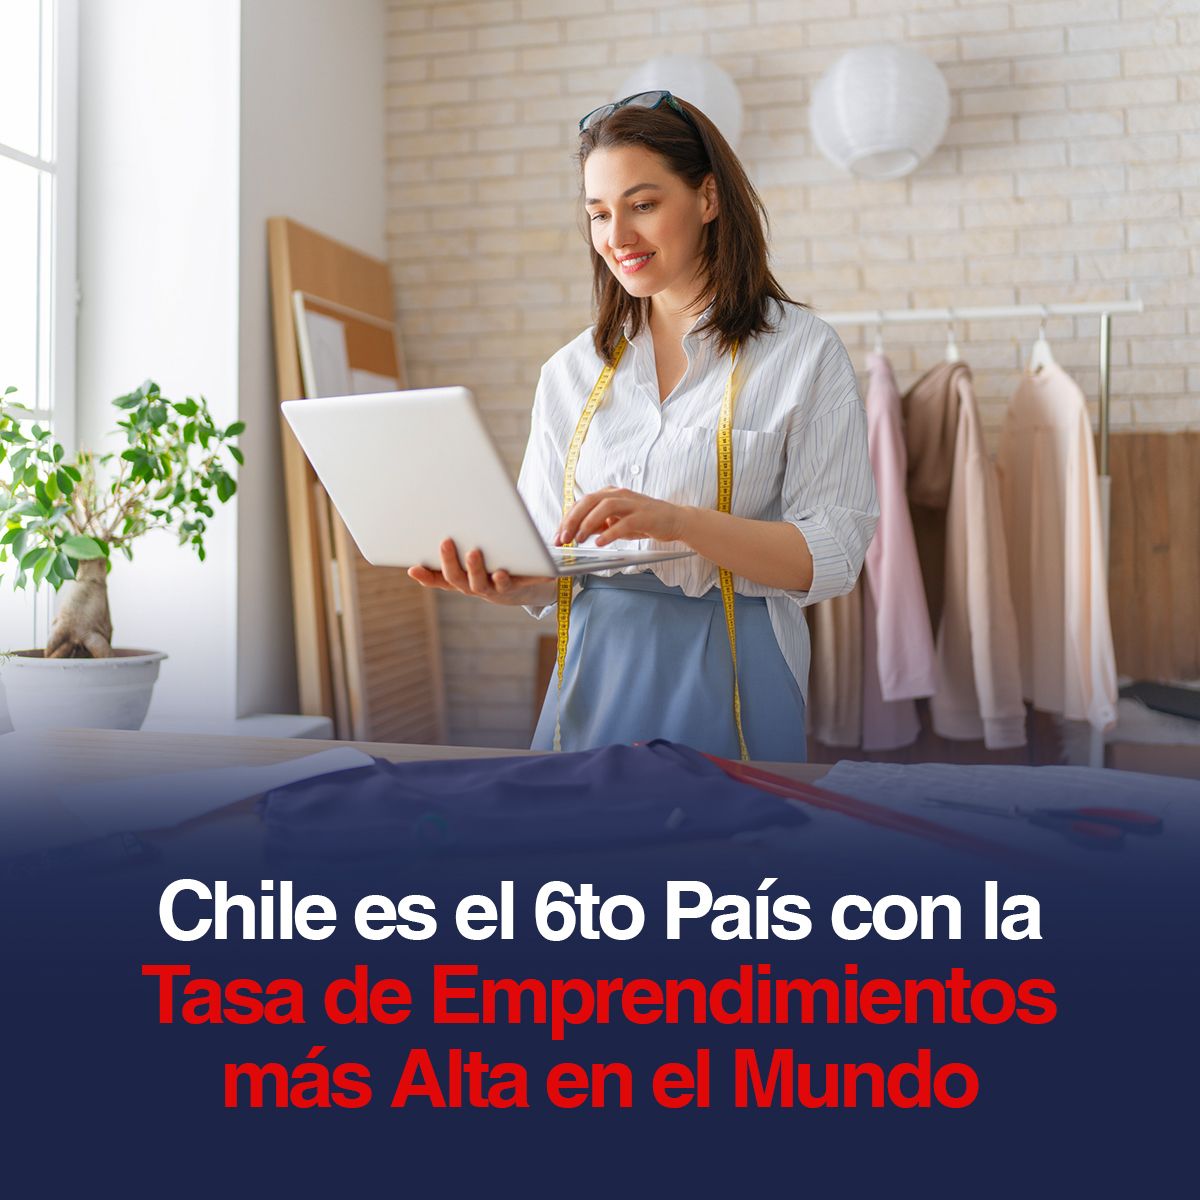 Chile es el 6to País con la Tasa de Emprendimientos más Alta en el Mundo